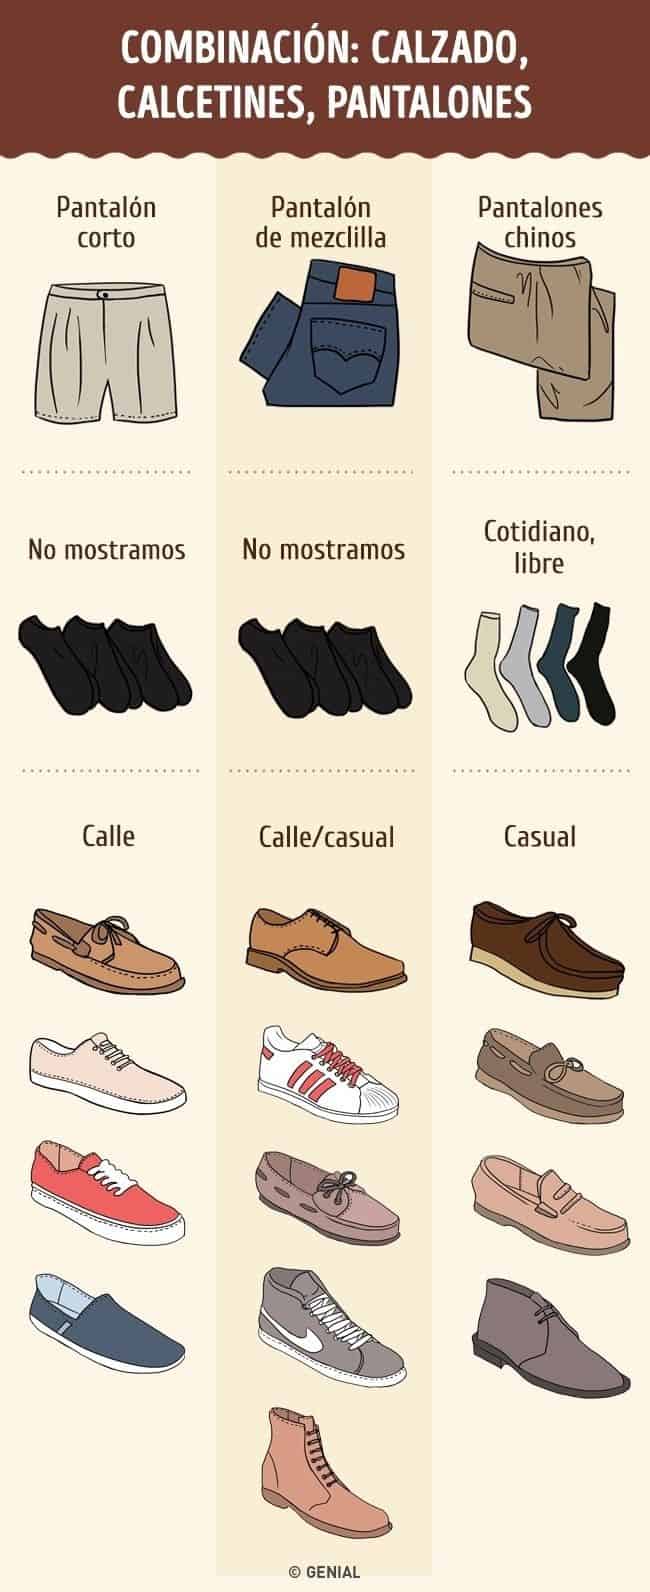 Tenis con calcetas: Los errores que debes evitar al usar esta combinación